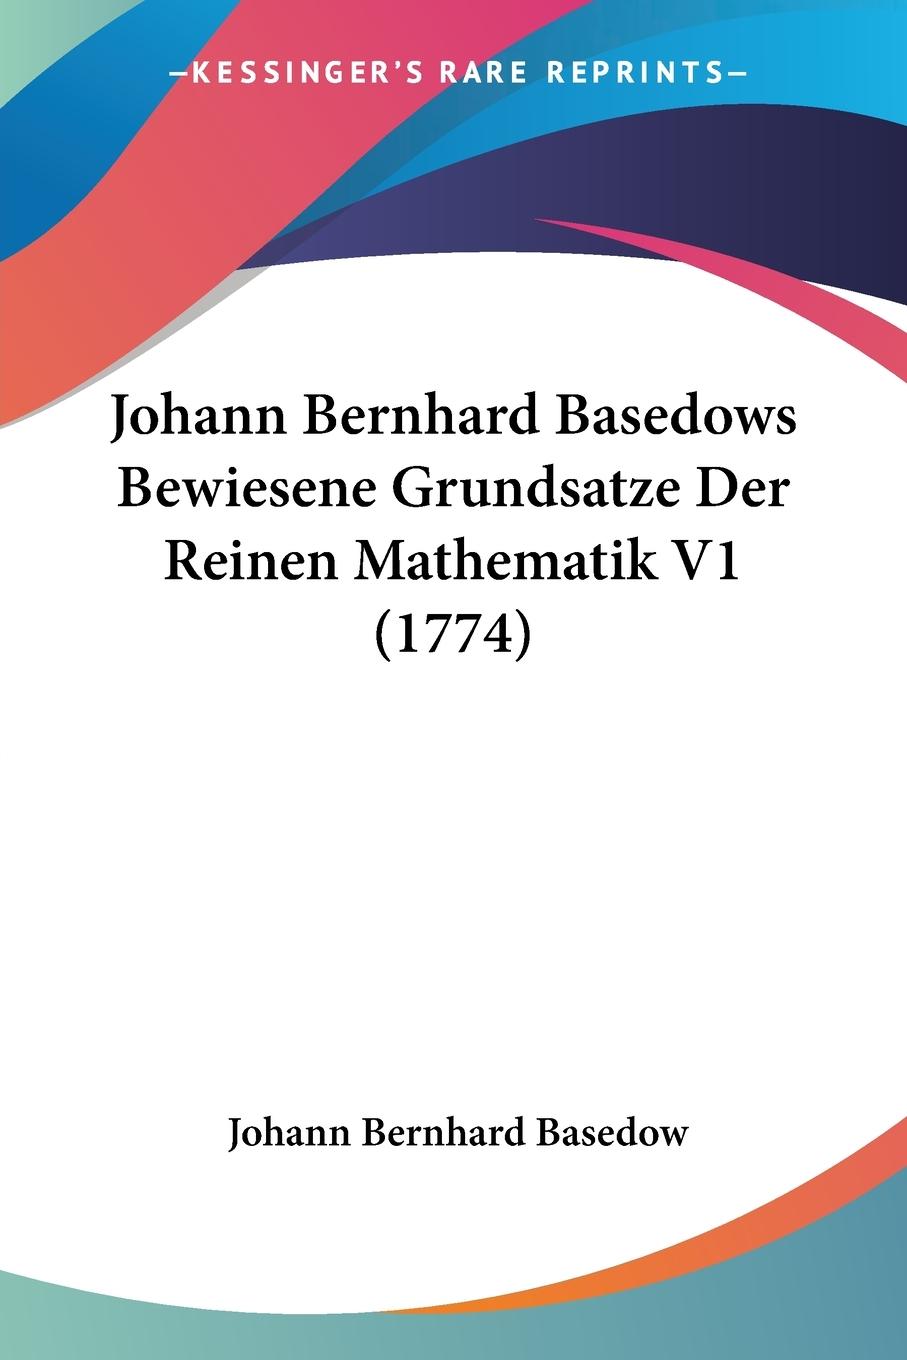 Johann Bernhard Basedows Bewiesene Grundsatze Der Reinen Mathematik V1 (1774) - Basedow, Johann Bernhard